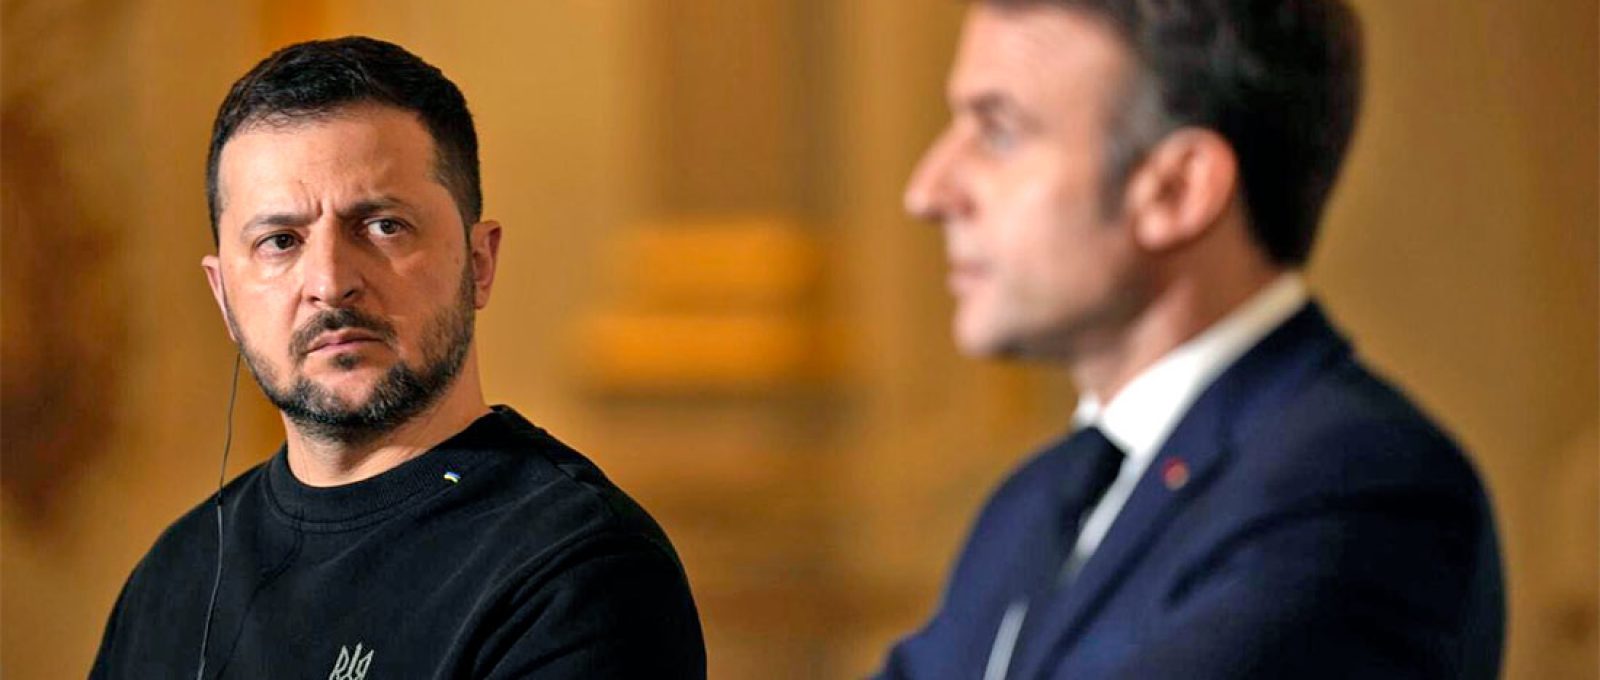 O presidente francês Emmanuel Macron, à direita, e seu homólogo ucraniano Volodymyr Zelenskyy em coletiva de imprensa após assinarem um acordo bilateral de segurança, em 16 de fevereiro de 2024, no Palácio do Eliseu, em Paris (Thibault Camus/Associated Press).